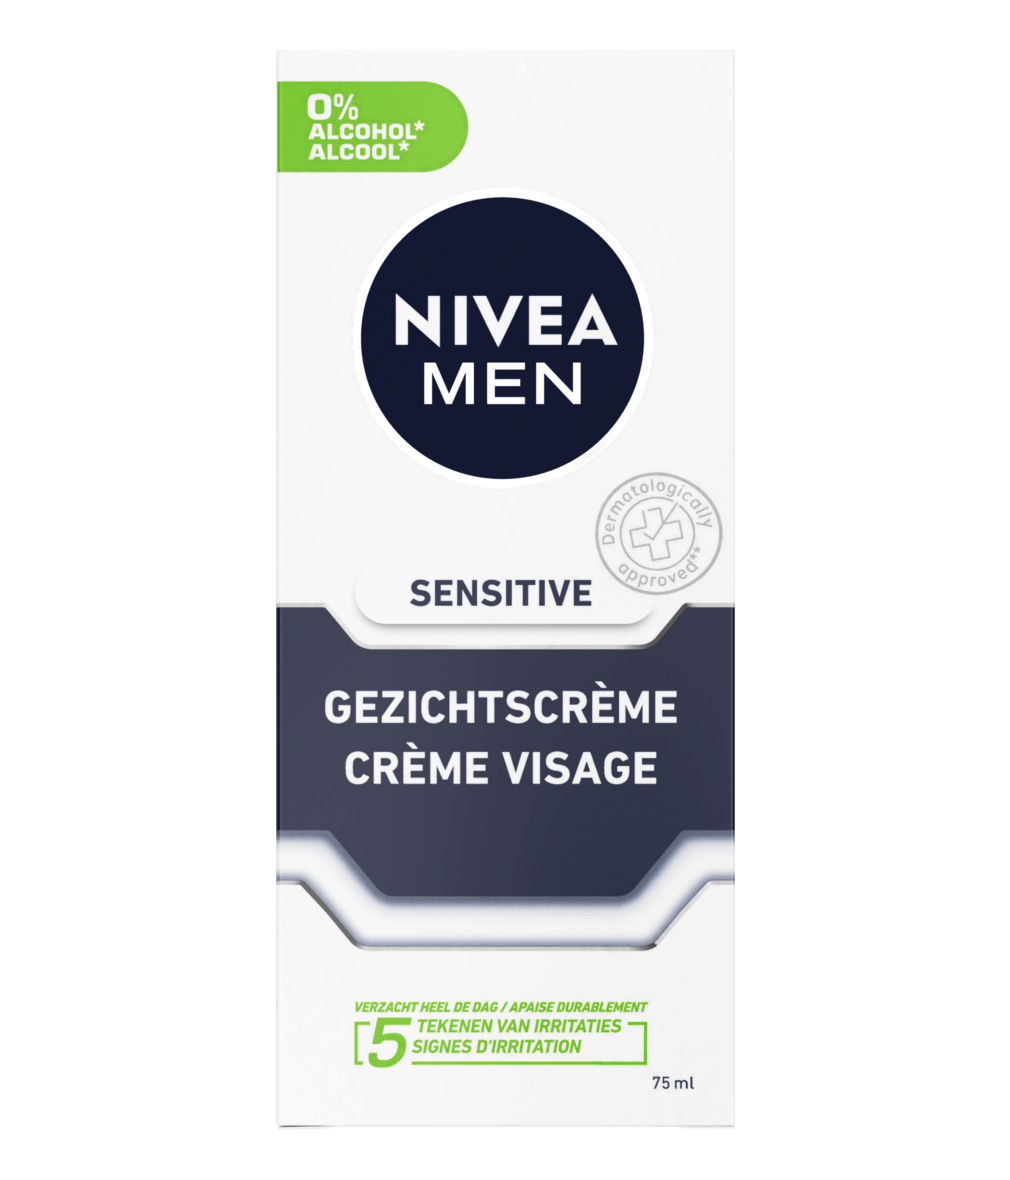 badminton auteursrechten Invloedrijk Sensitive Gezichtscrème – Directe verlichting – NIVEA MEN